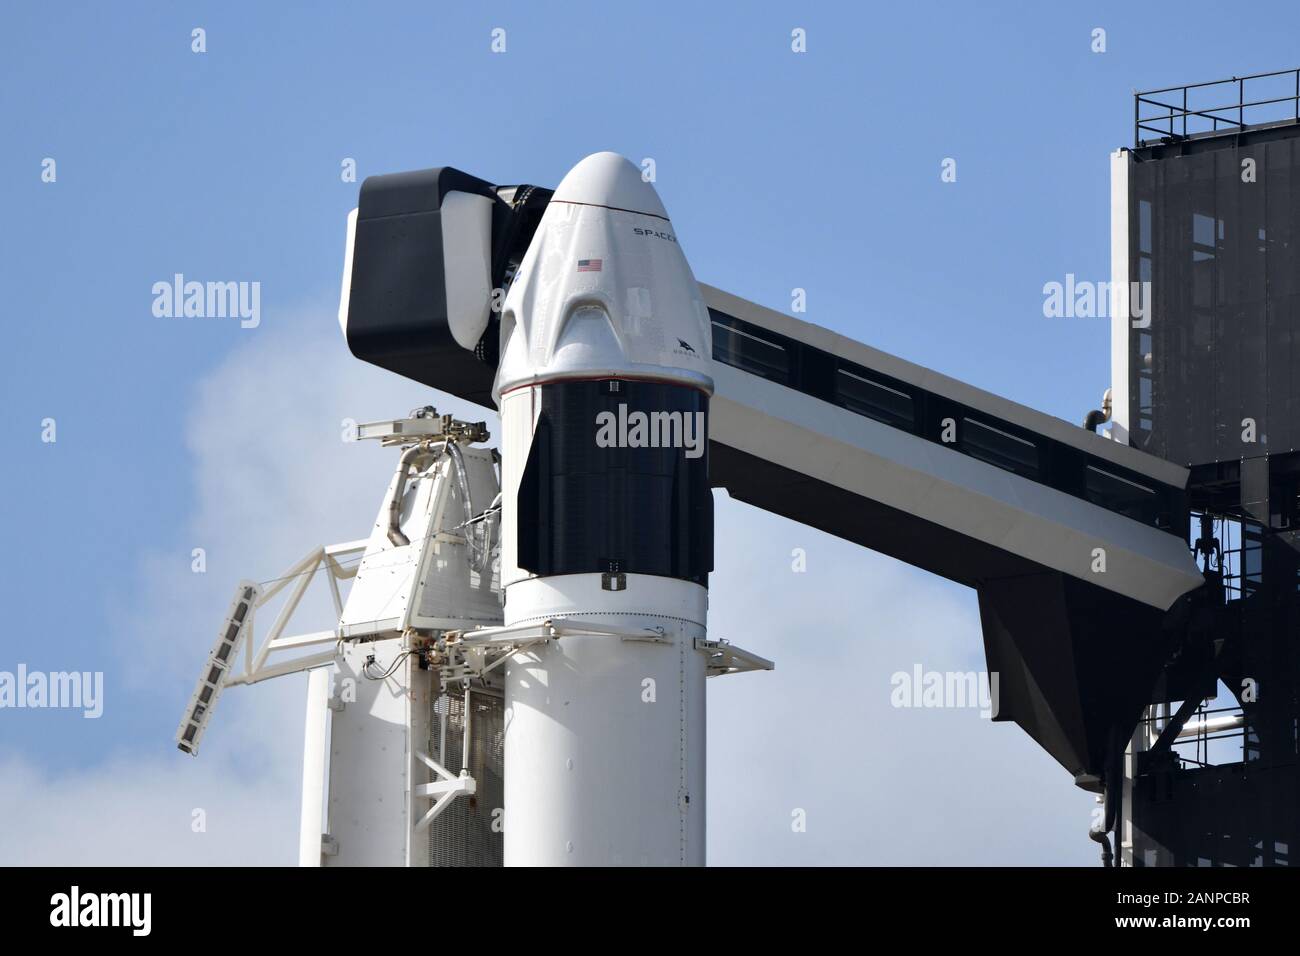 El Centro Espacial Kennedy, Florida, Estados Unidos. 18 ene, 2020. Tras un retraso de 24 horas debido a la mar gruesa, la tripulación de una nave espacial SpaceX Dragon se asienta sobre un cohete Falcon 9 en el complejo de lanzamiento 39A en el Centro Espacial Kennedy, Florida, el viernes, 18 de enero de 2020. SpaceX llevará a cabo un lanzamiento de prueba de cancelación que se requiere para garantizar la seguridad de la NASA para futuras misiones tripuladas a la Estación Espacial Internacional.Foto por Joe Marino-Bill Cantrell/UPI Crédito: UPI/Alamy Live News Foto de stock